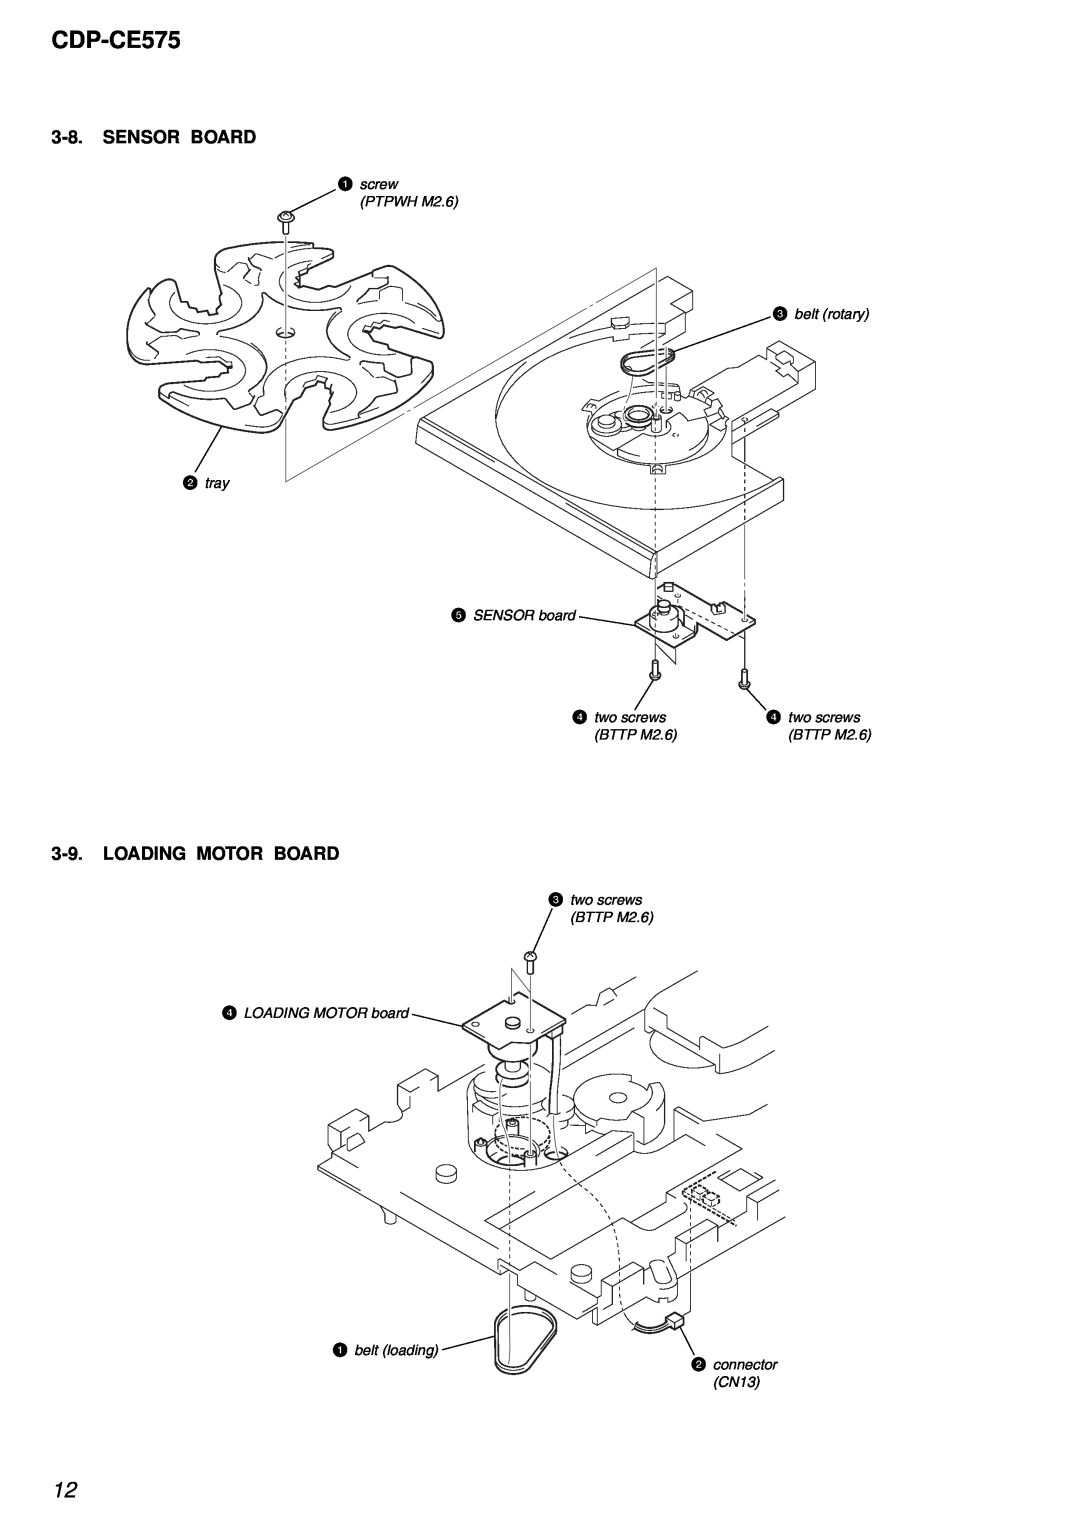 Sony CDP-CE575 Sensor Board, Loading Motor Board, 1screw PTPWH M2.6 3 belt rotary 2tray, SENSOR board, two screws 